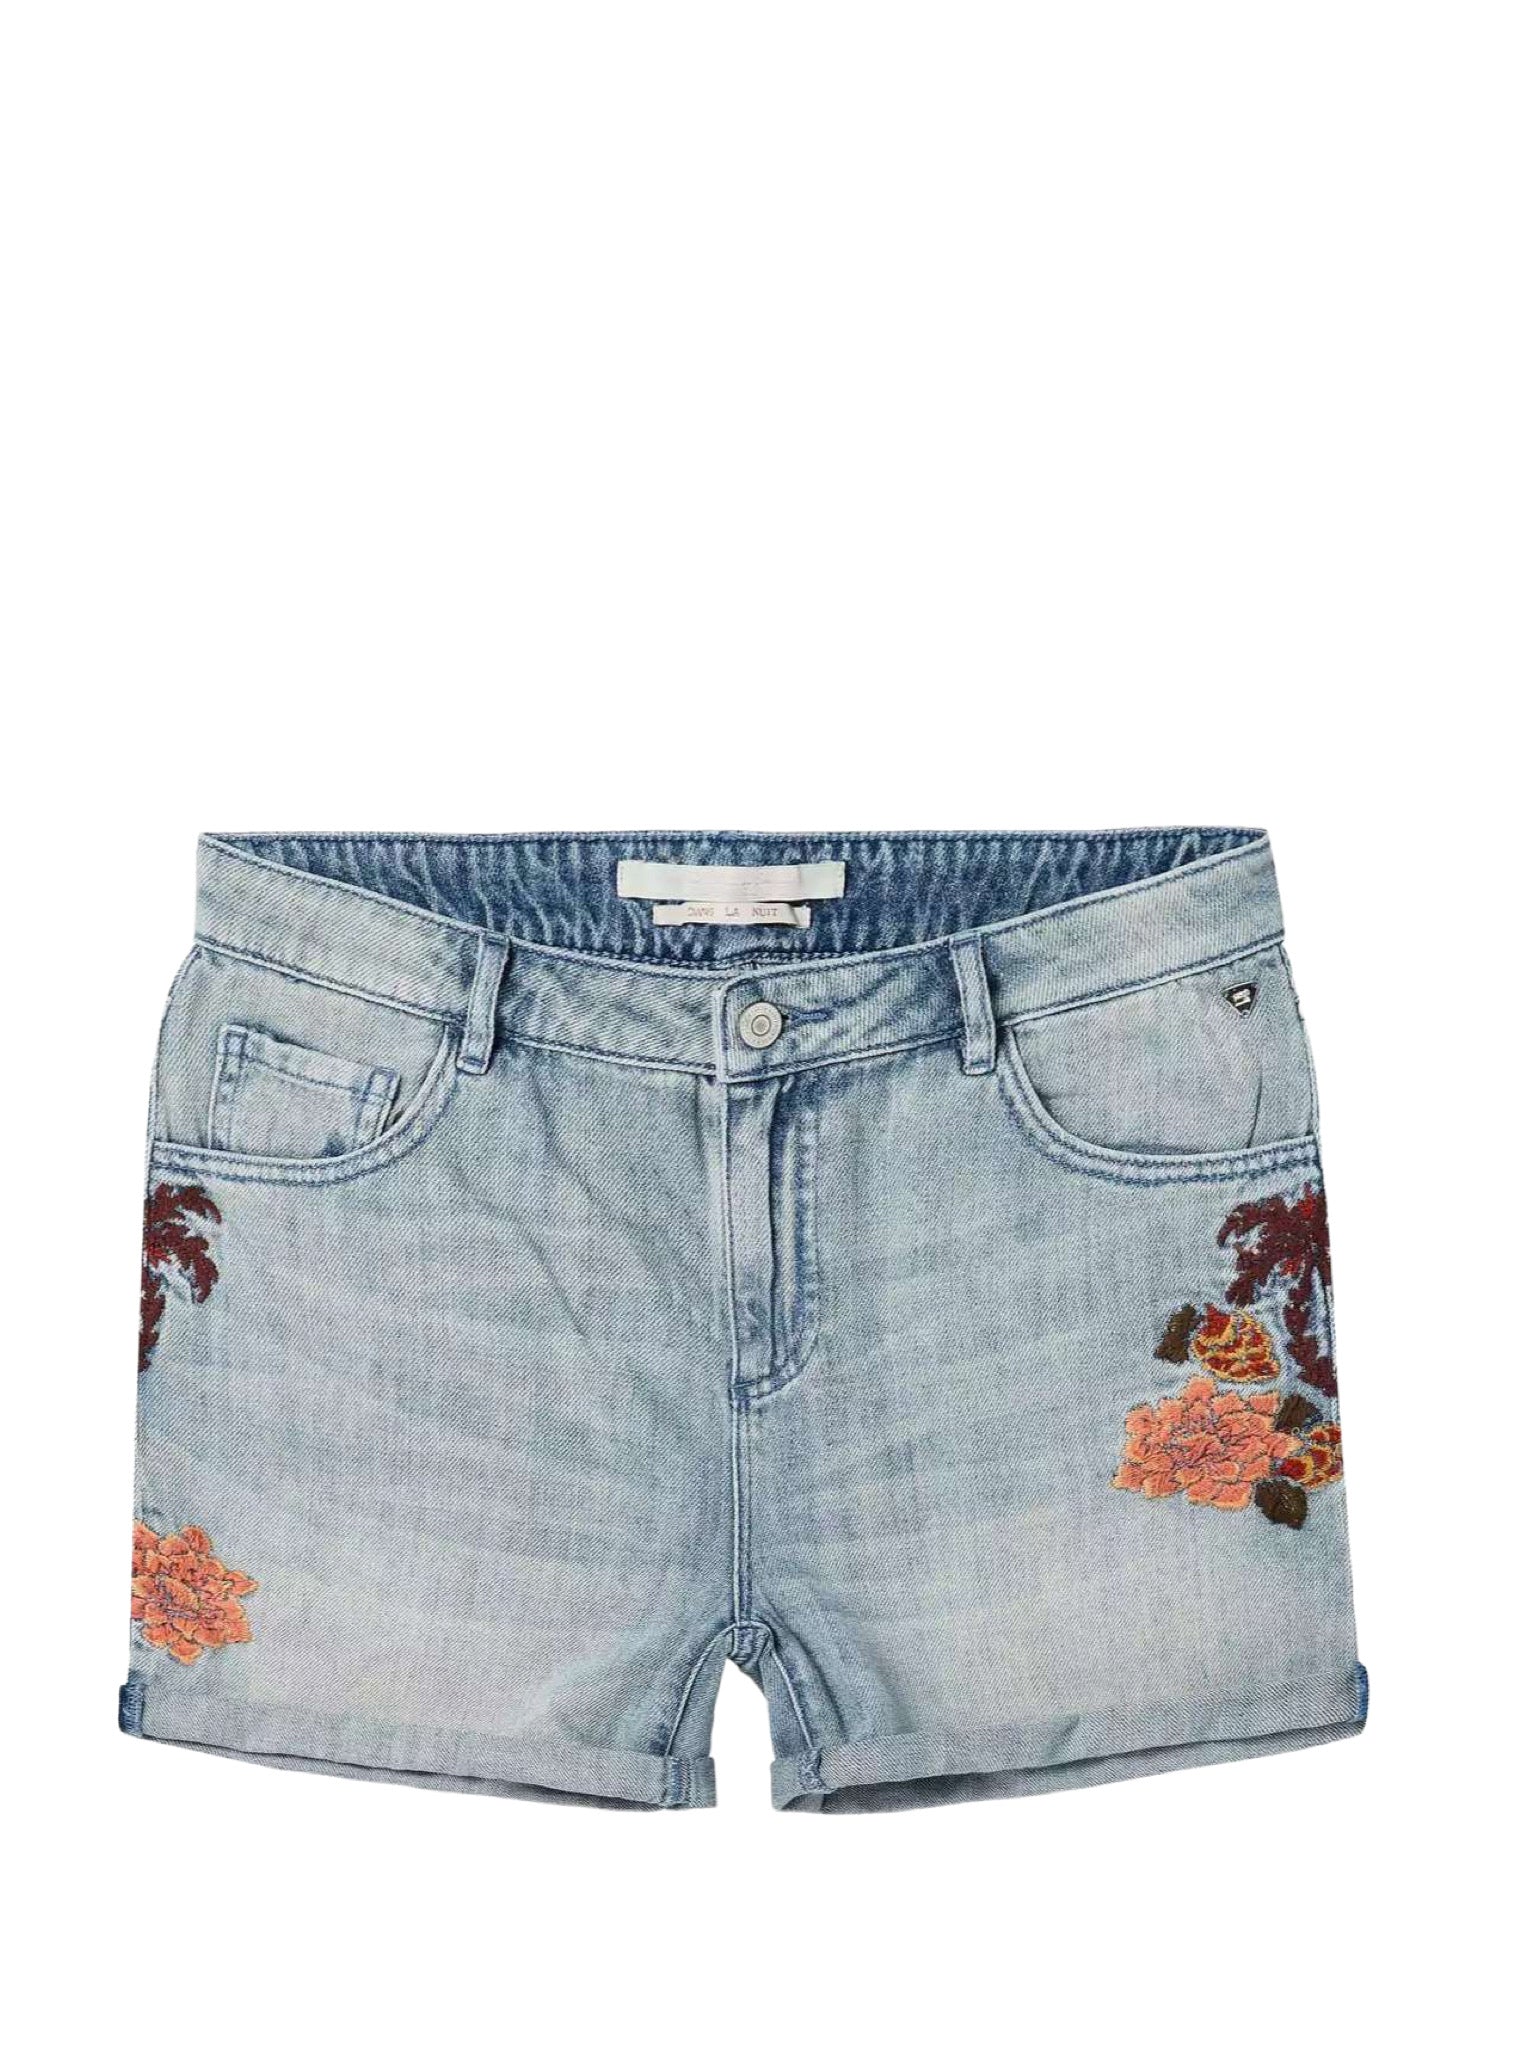 Jean shorts με κεντημένο σχέδιο στις τσέπες